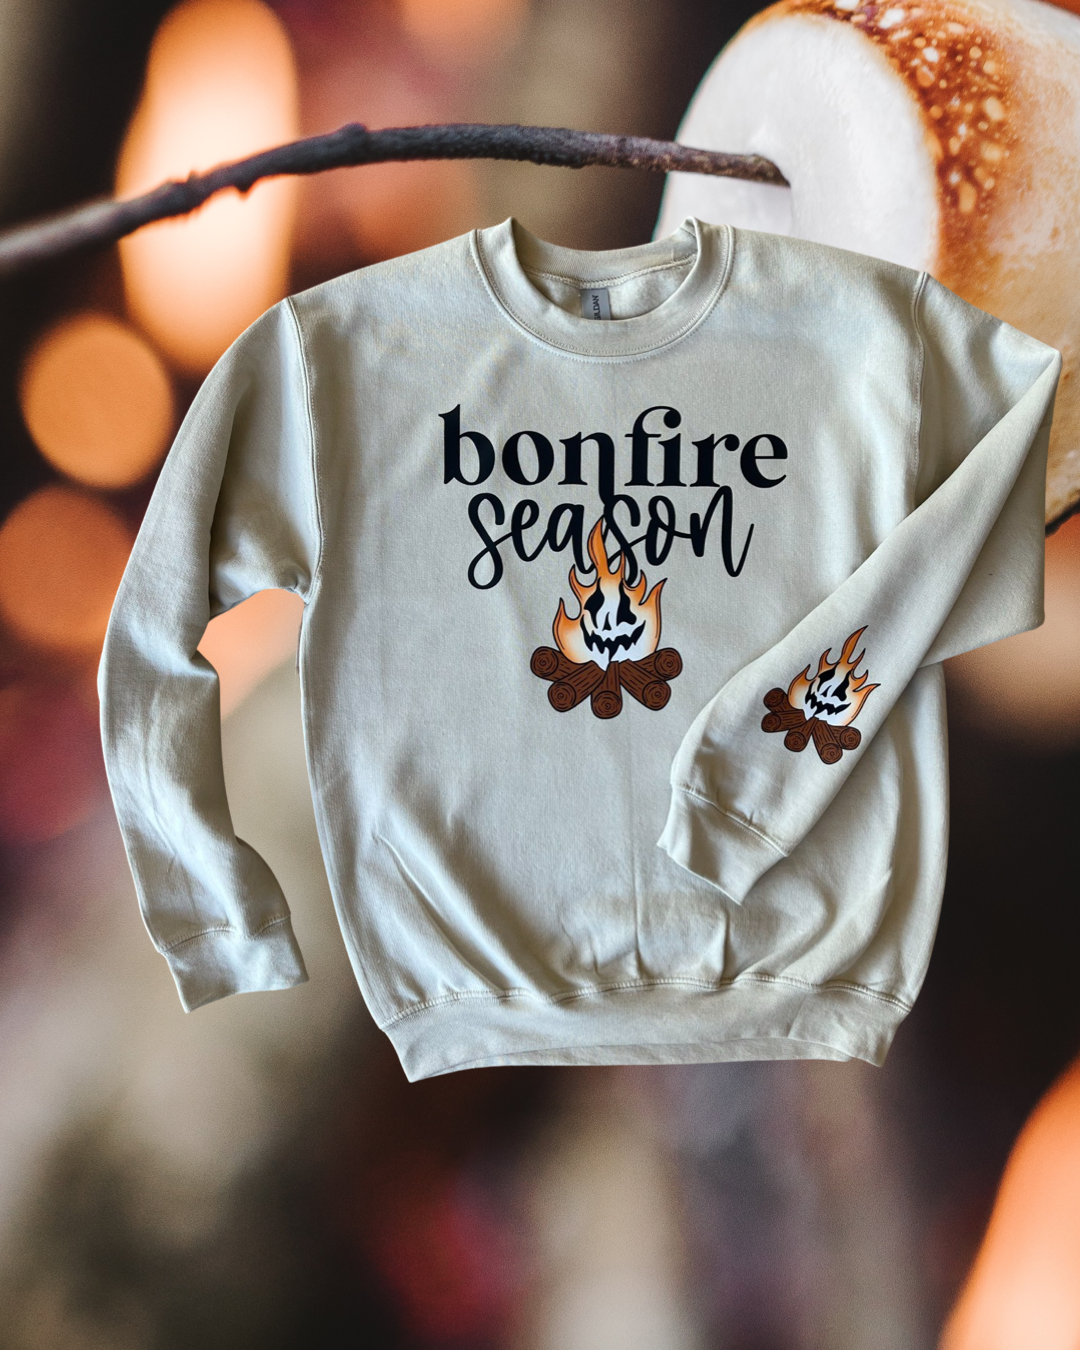 Bonfire season sweatshirt